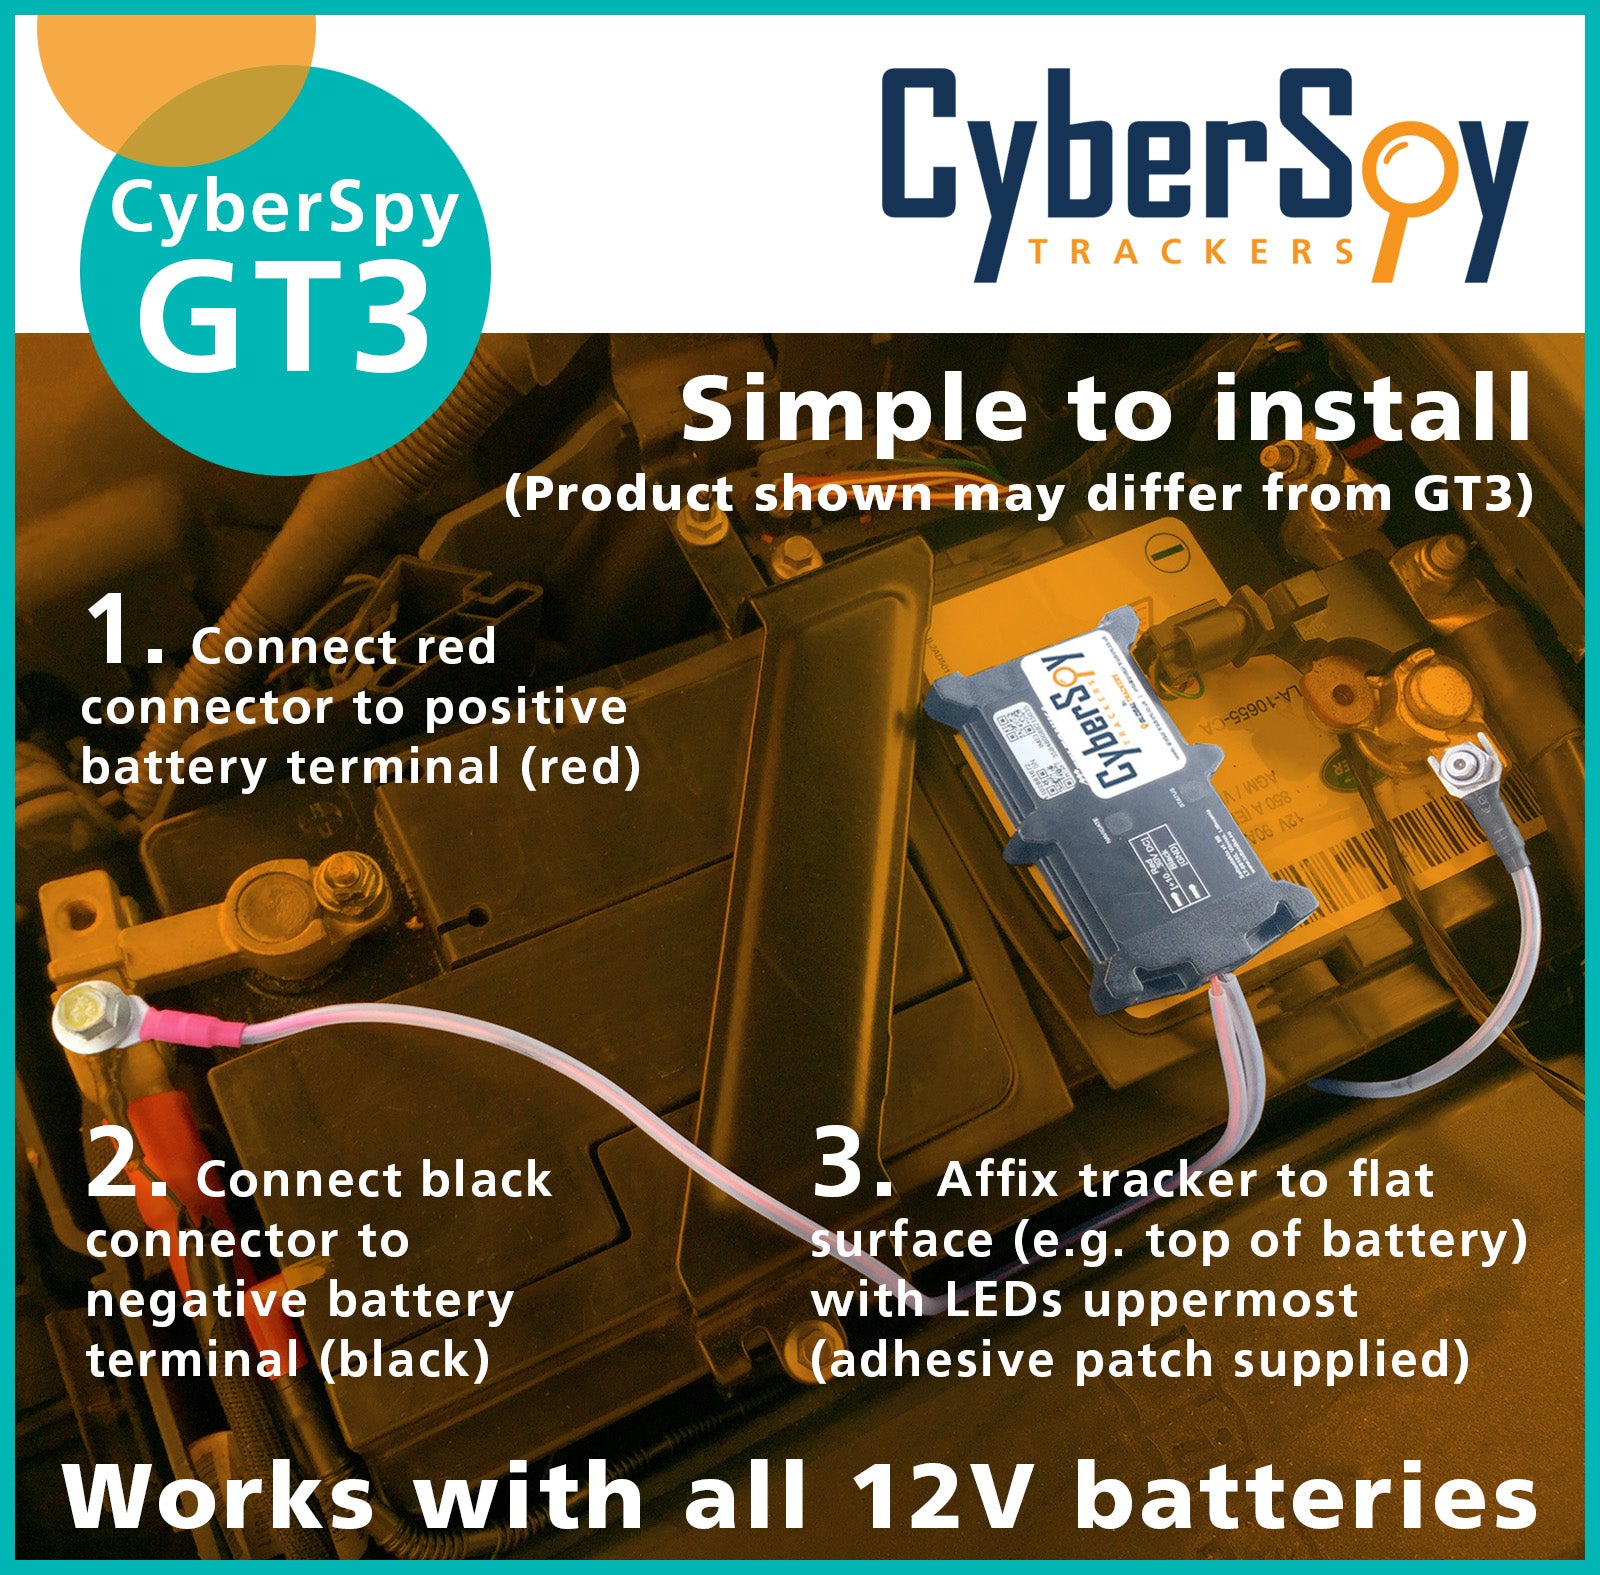 CyberSpy GT3